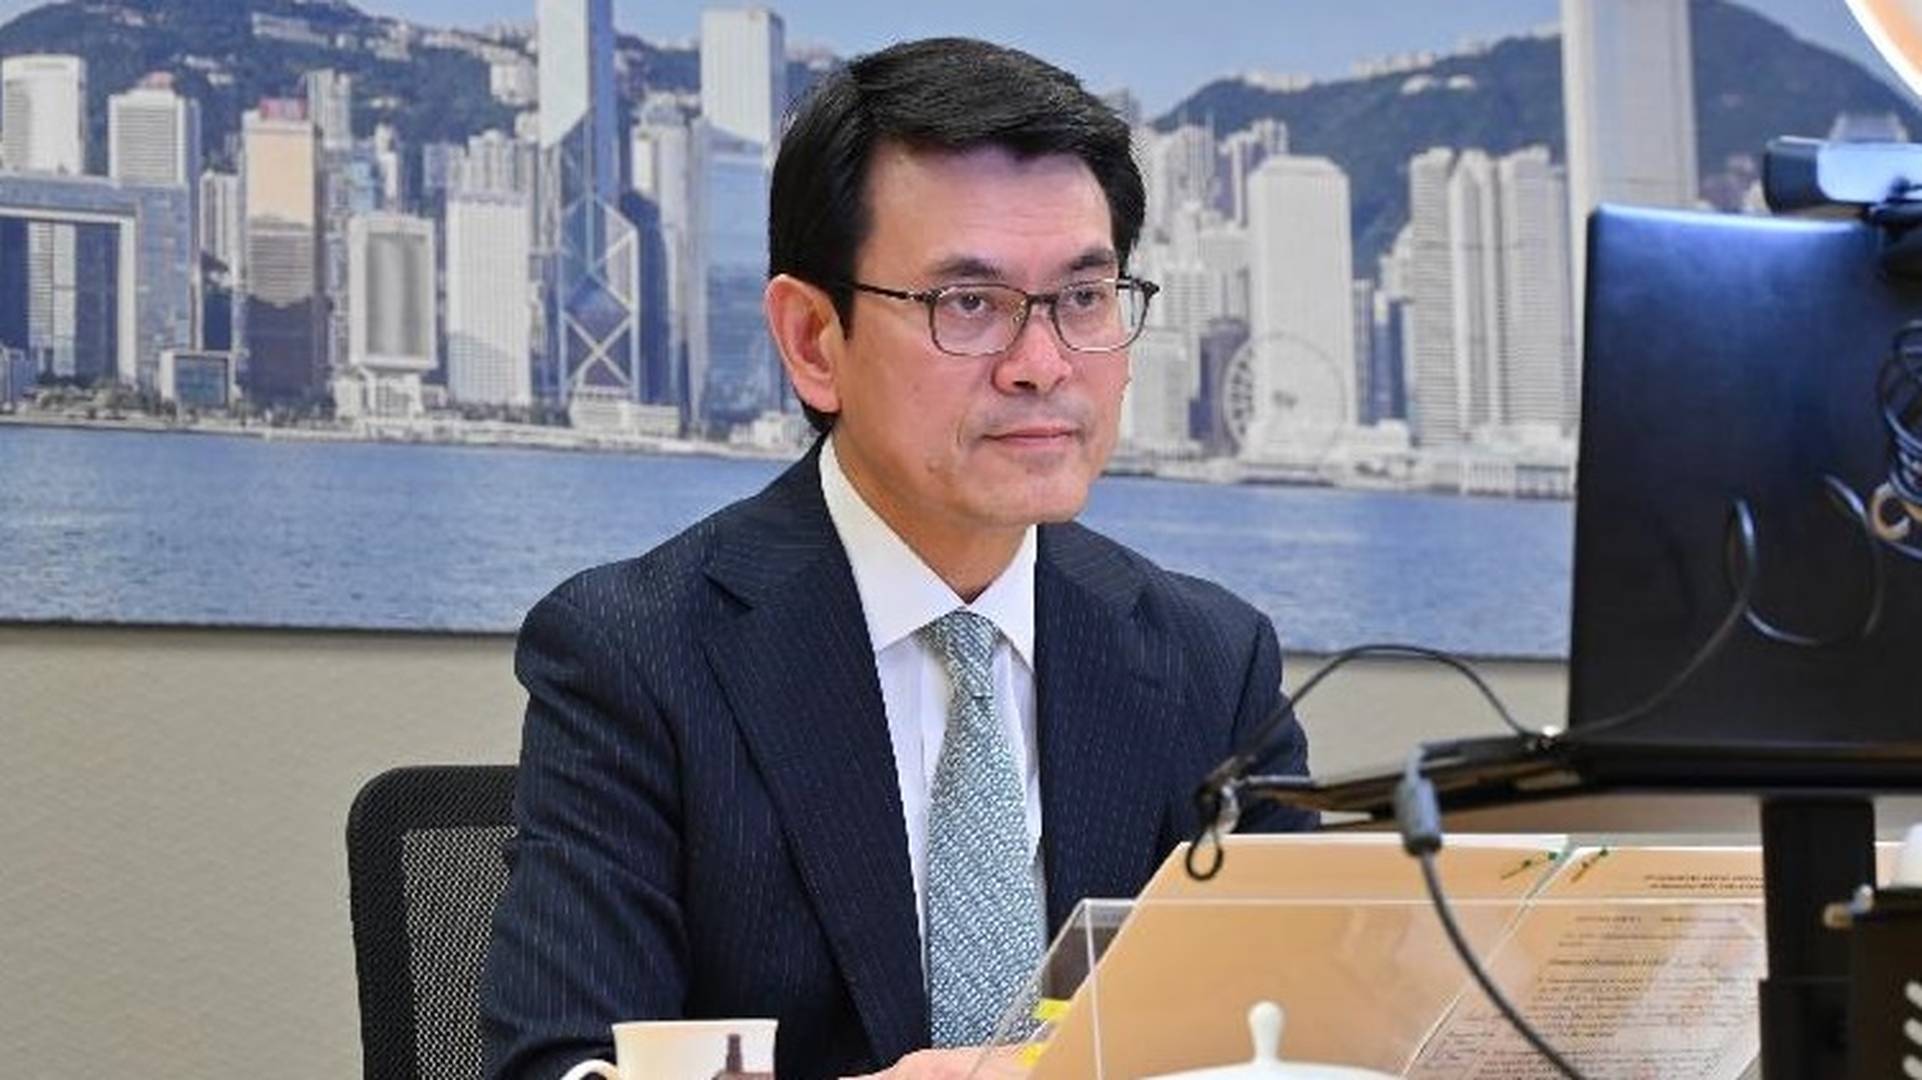 東盟經貿部長歡迎香港尋求加入RCEP